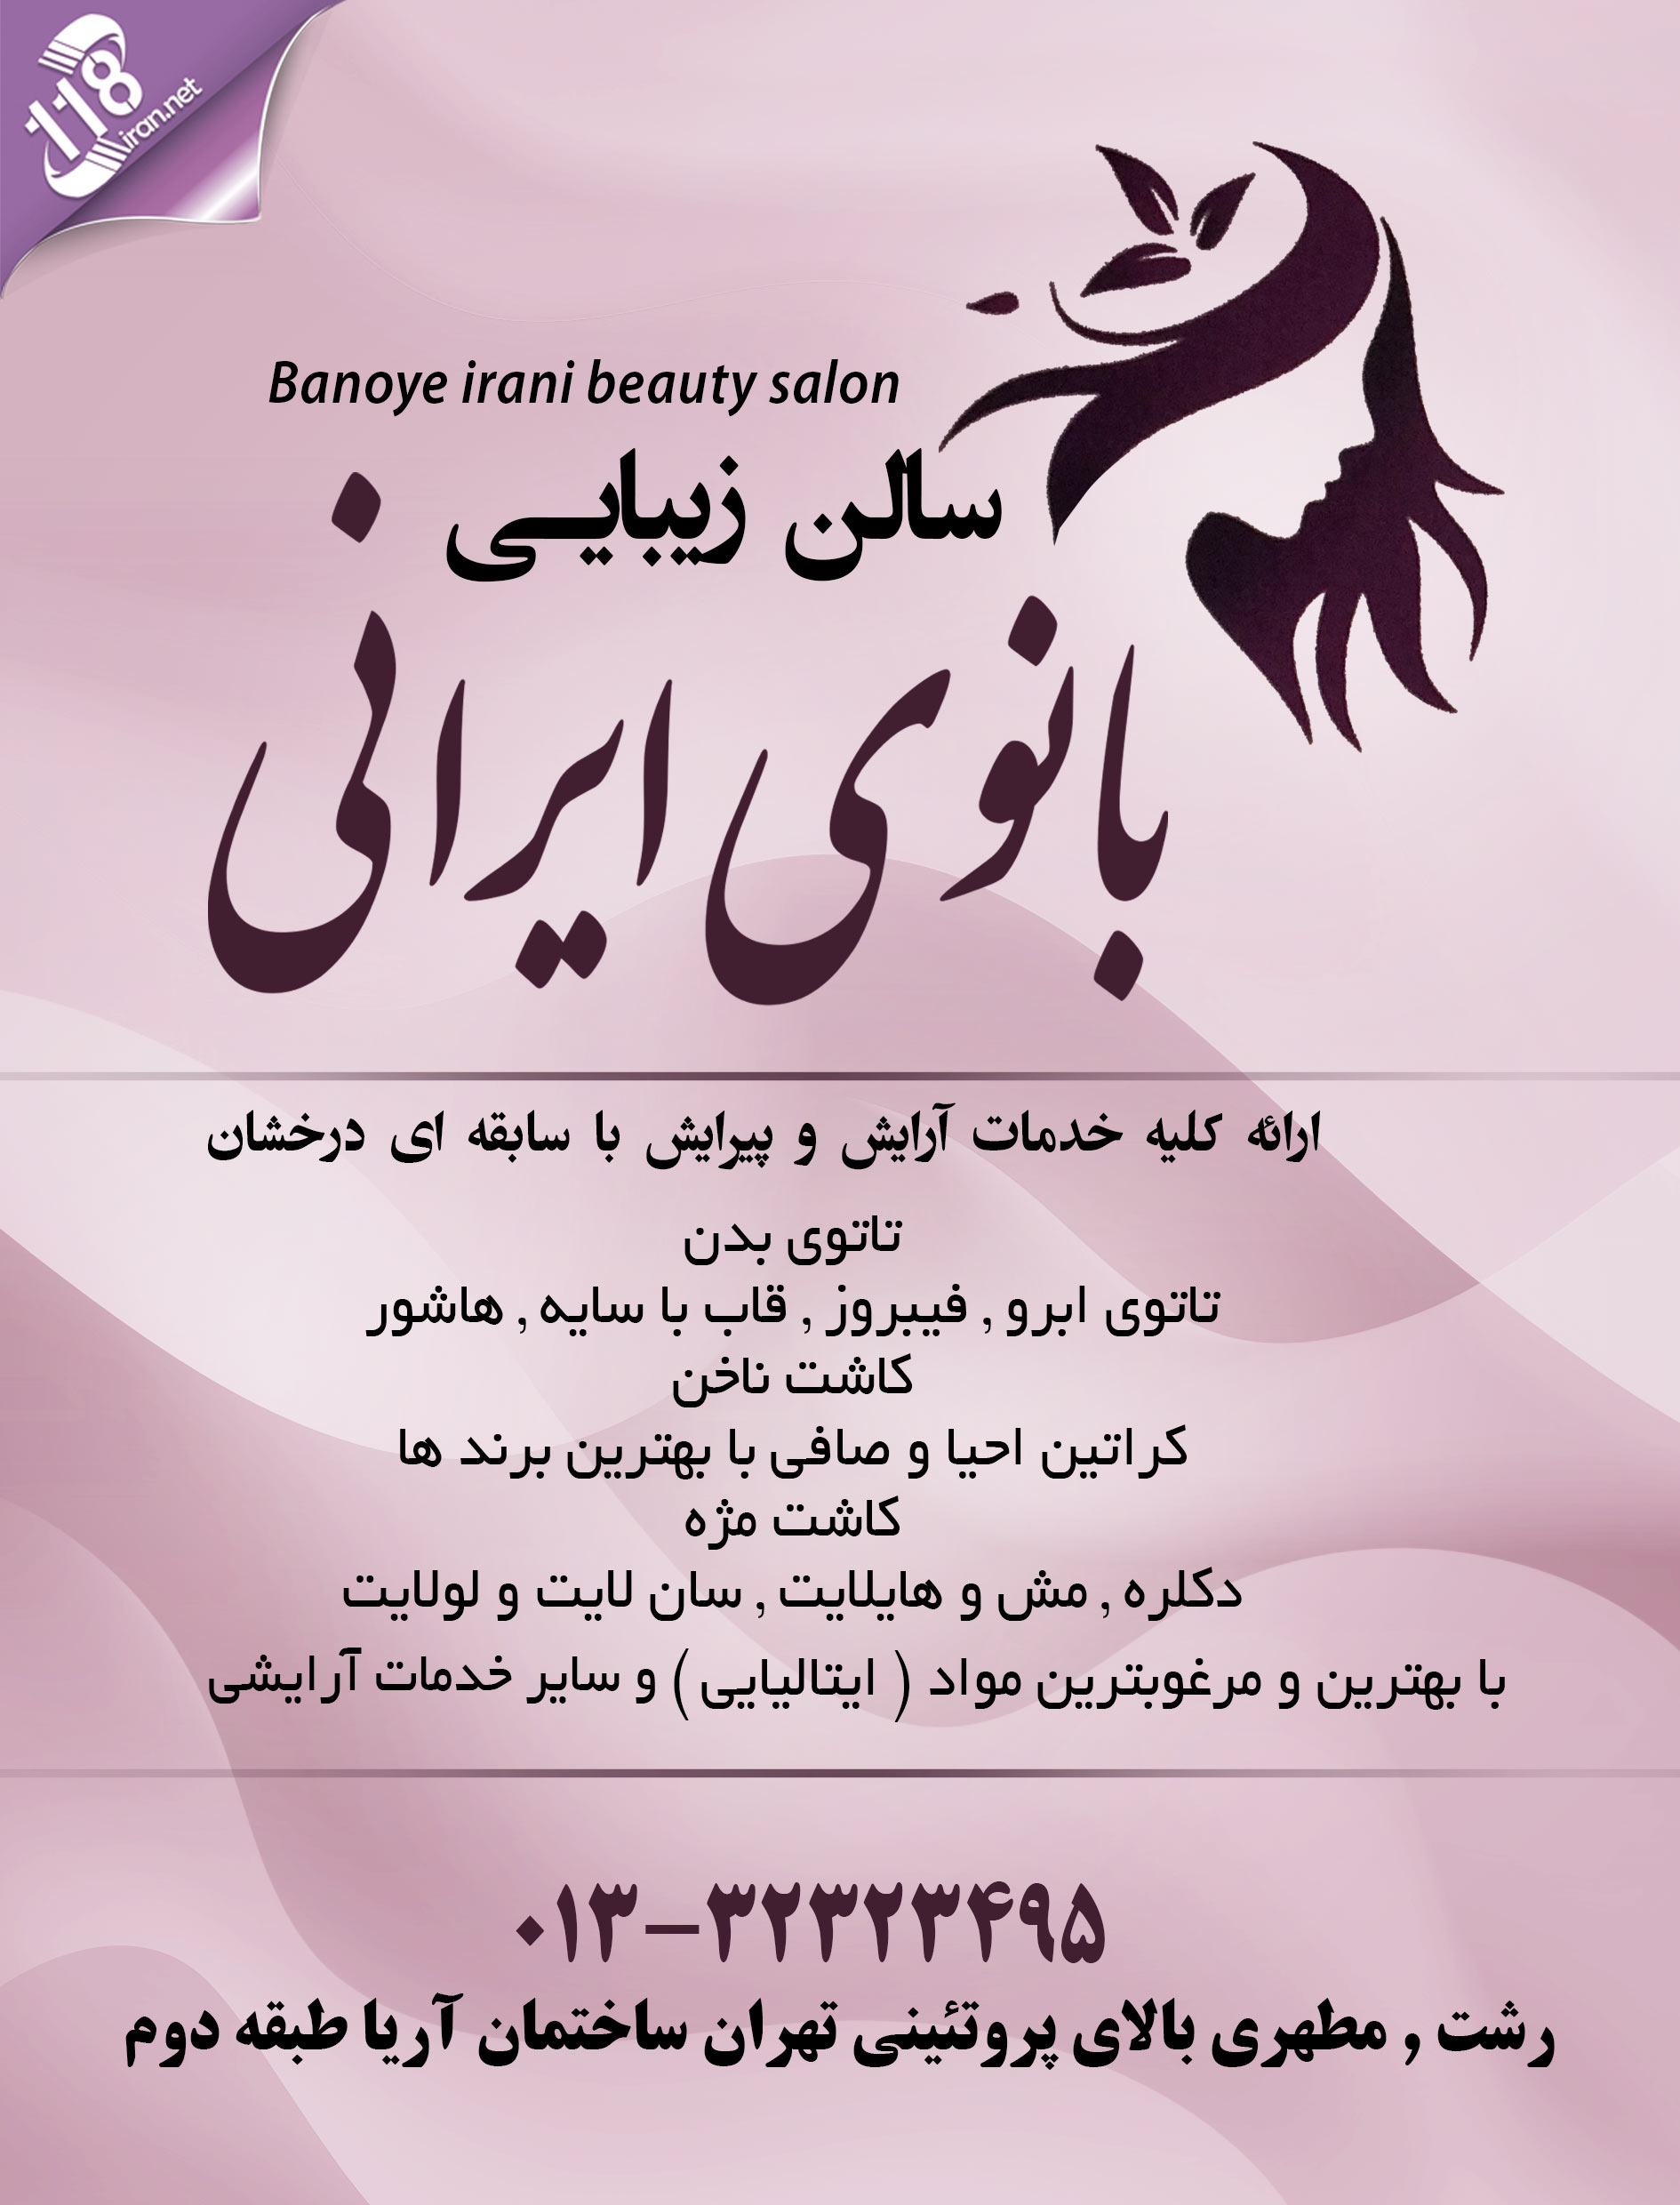 سالن زیبایی بانوی ایرانی